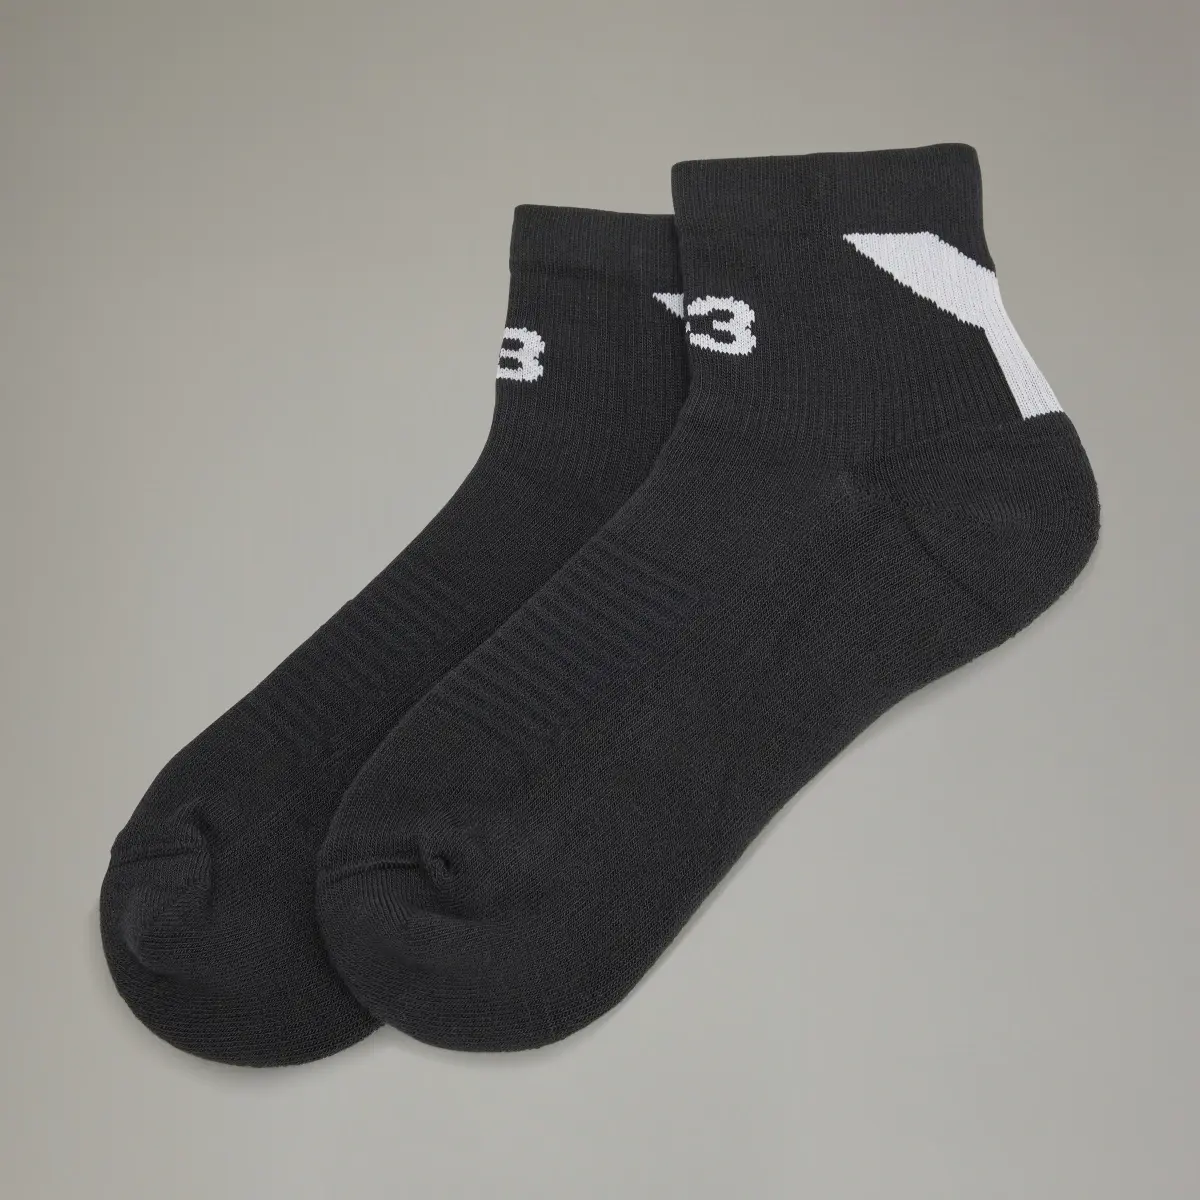 Adidas Y-3 Lo Socks. 2